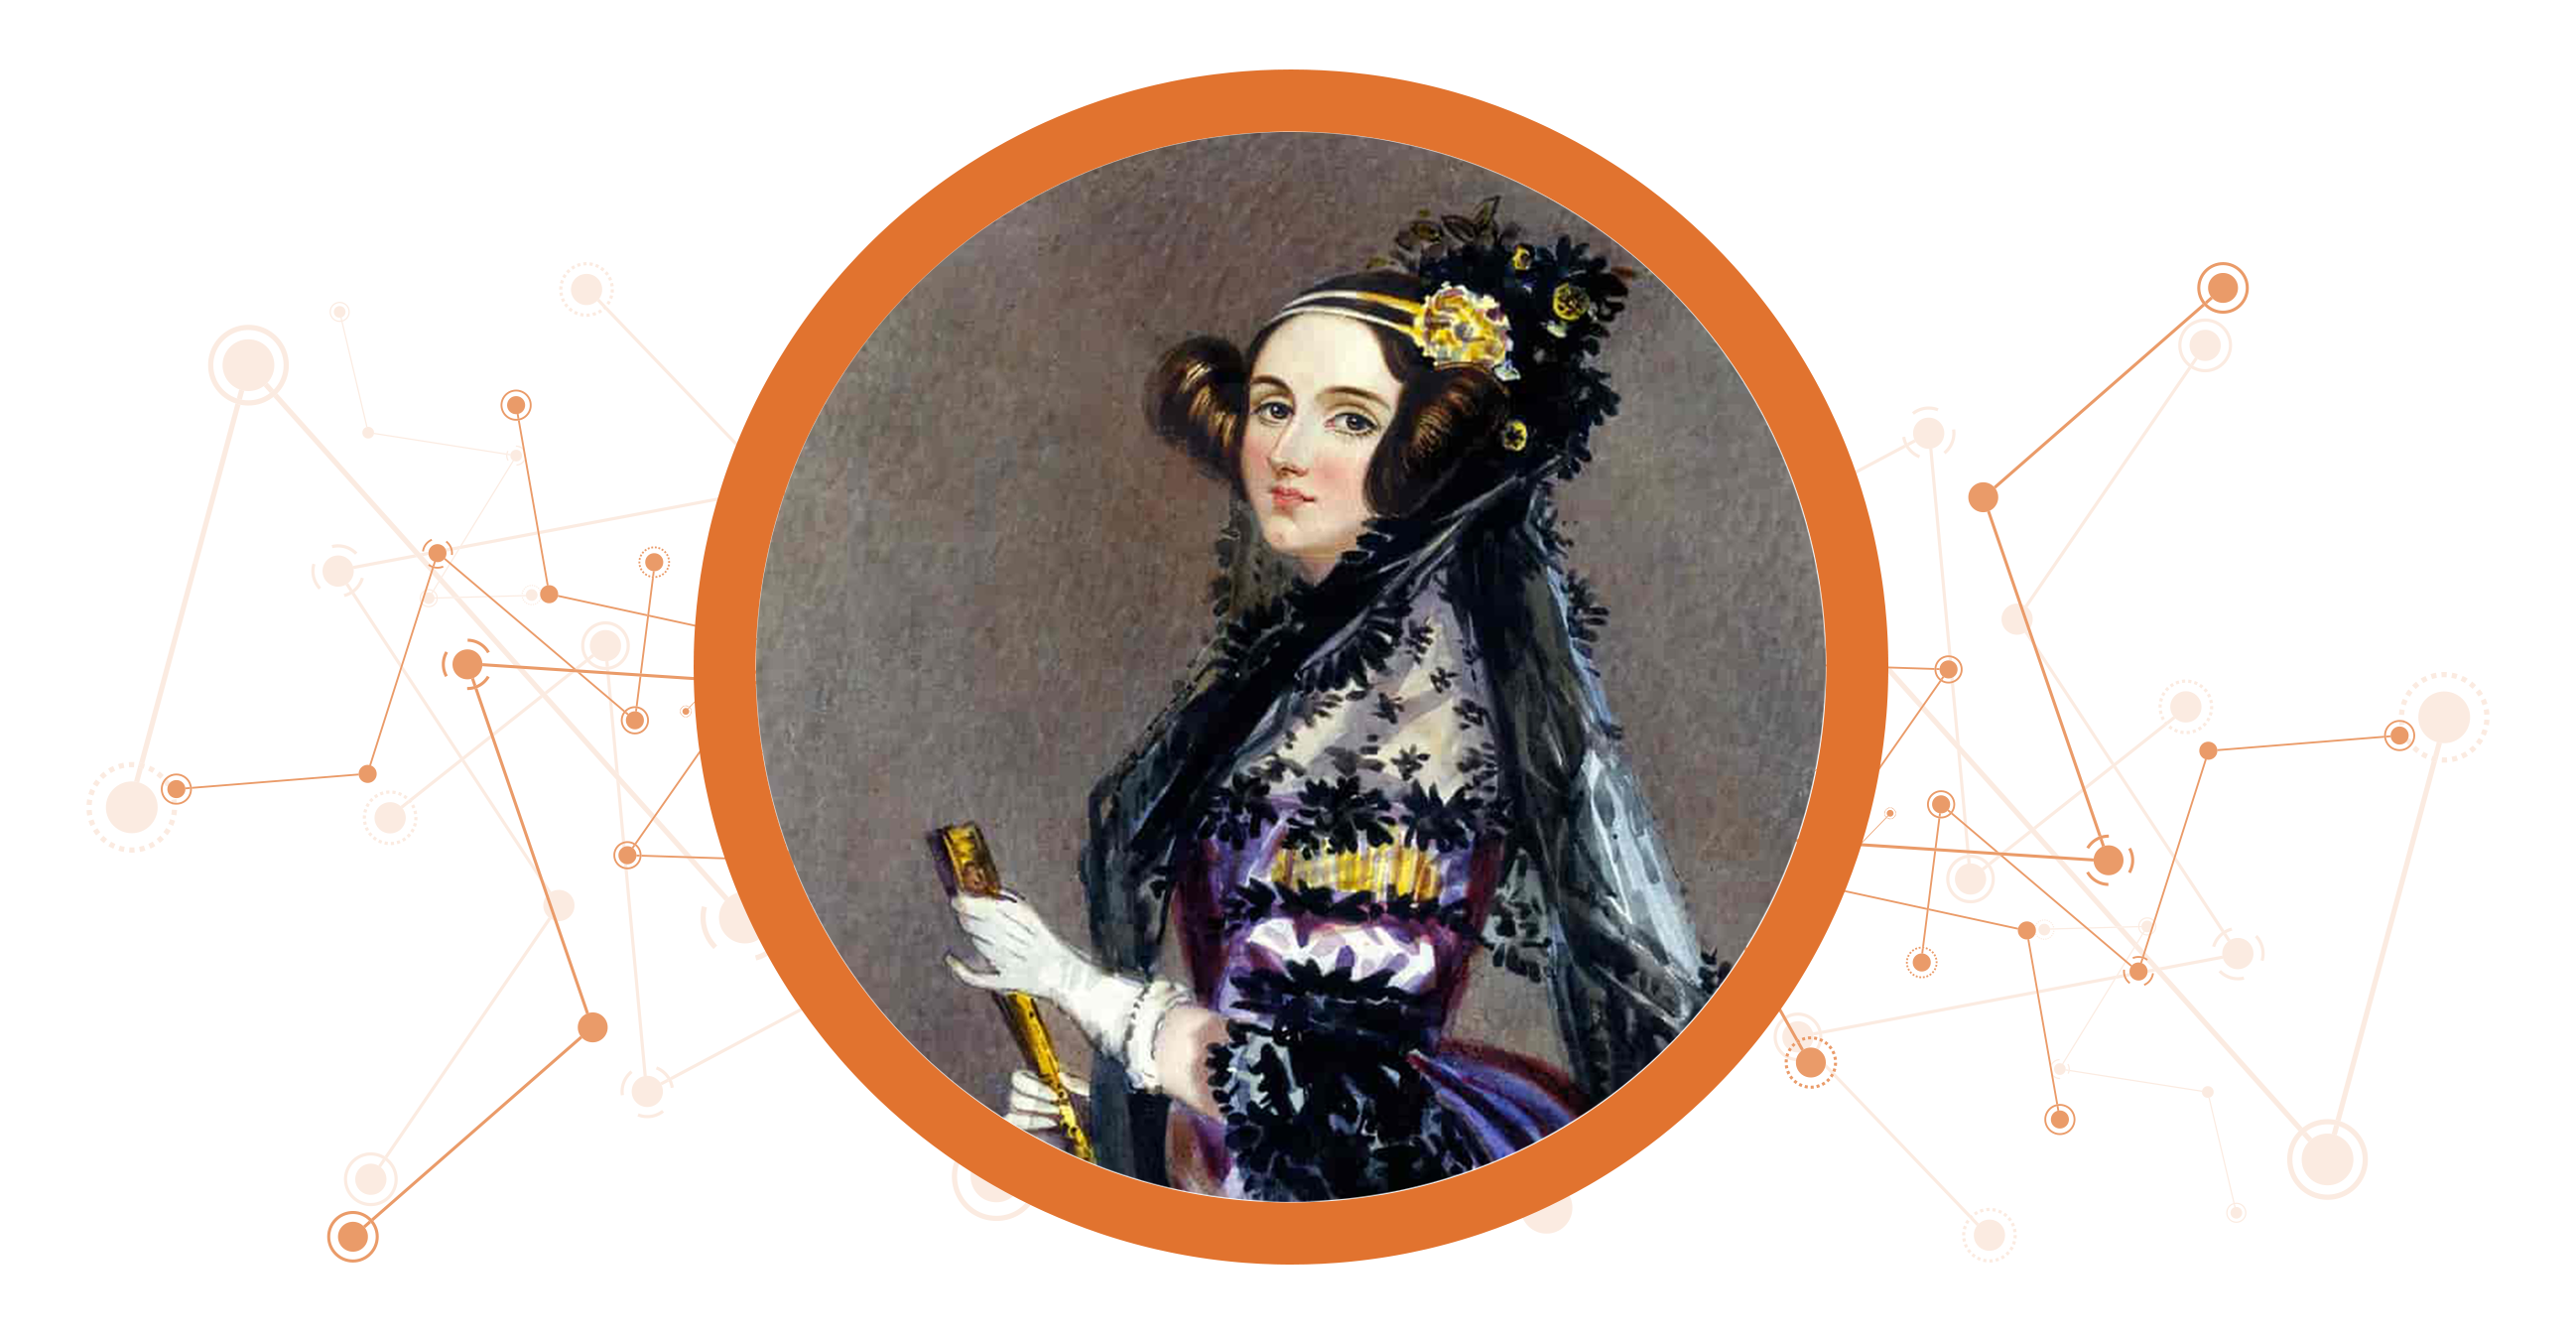 Incompetencia Advertencia Existencia Ada Lovelace, inspirando vocaciones STEM desde 1815 - SIVSA